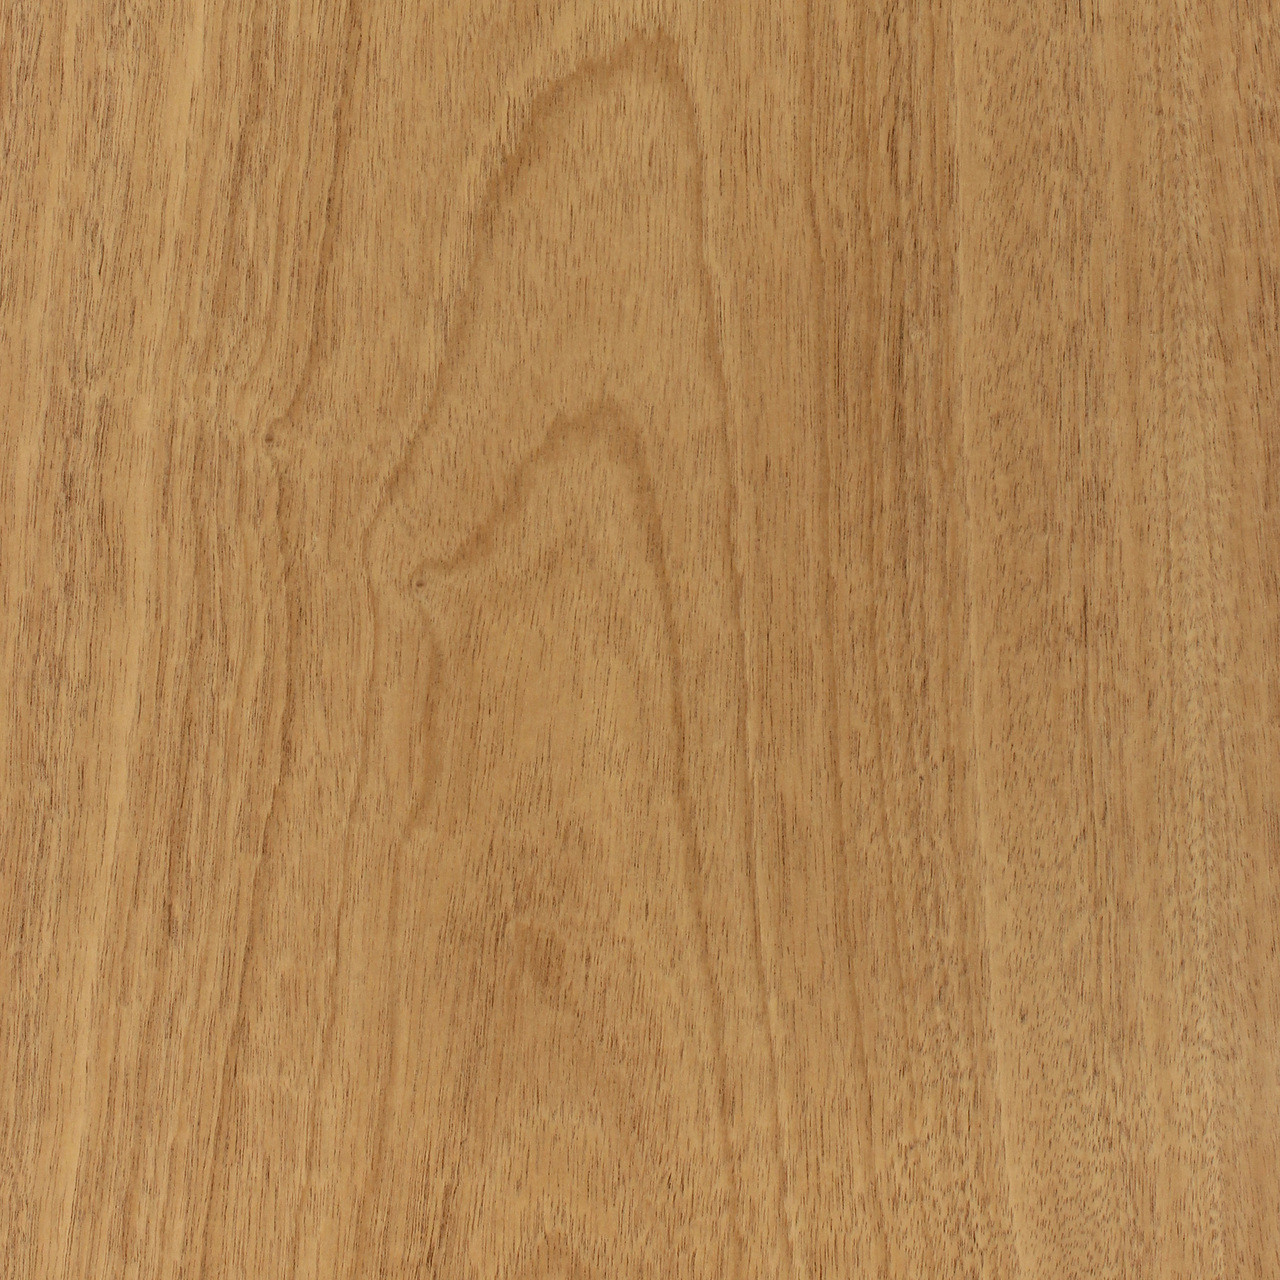 Wood Veneer, Walnut, Flat Cut, 2x8, PSA Backed - Wood Veneer Sheets 